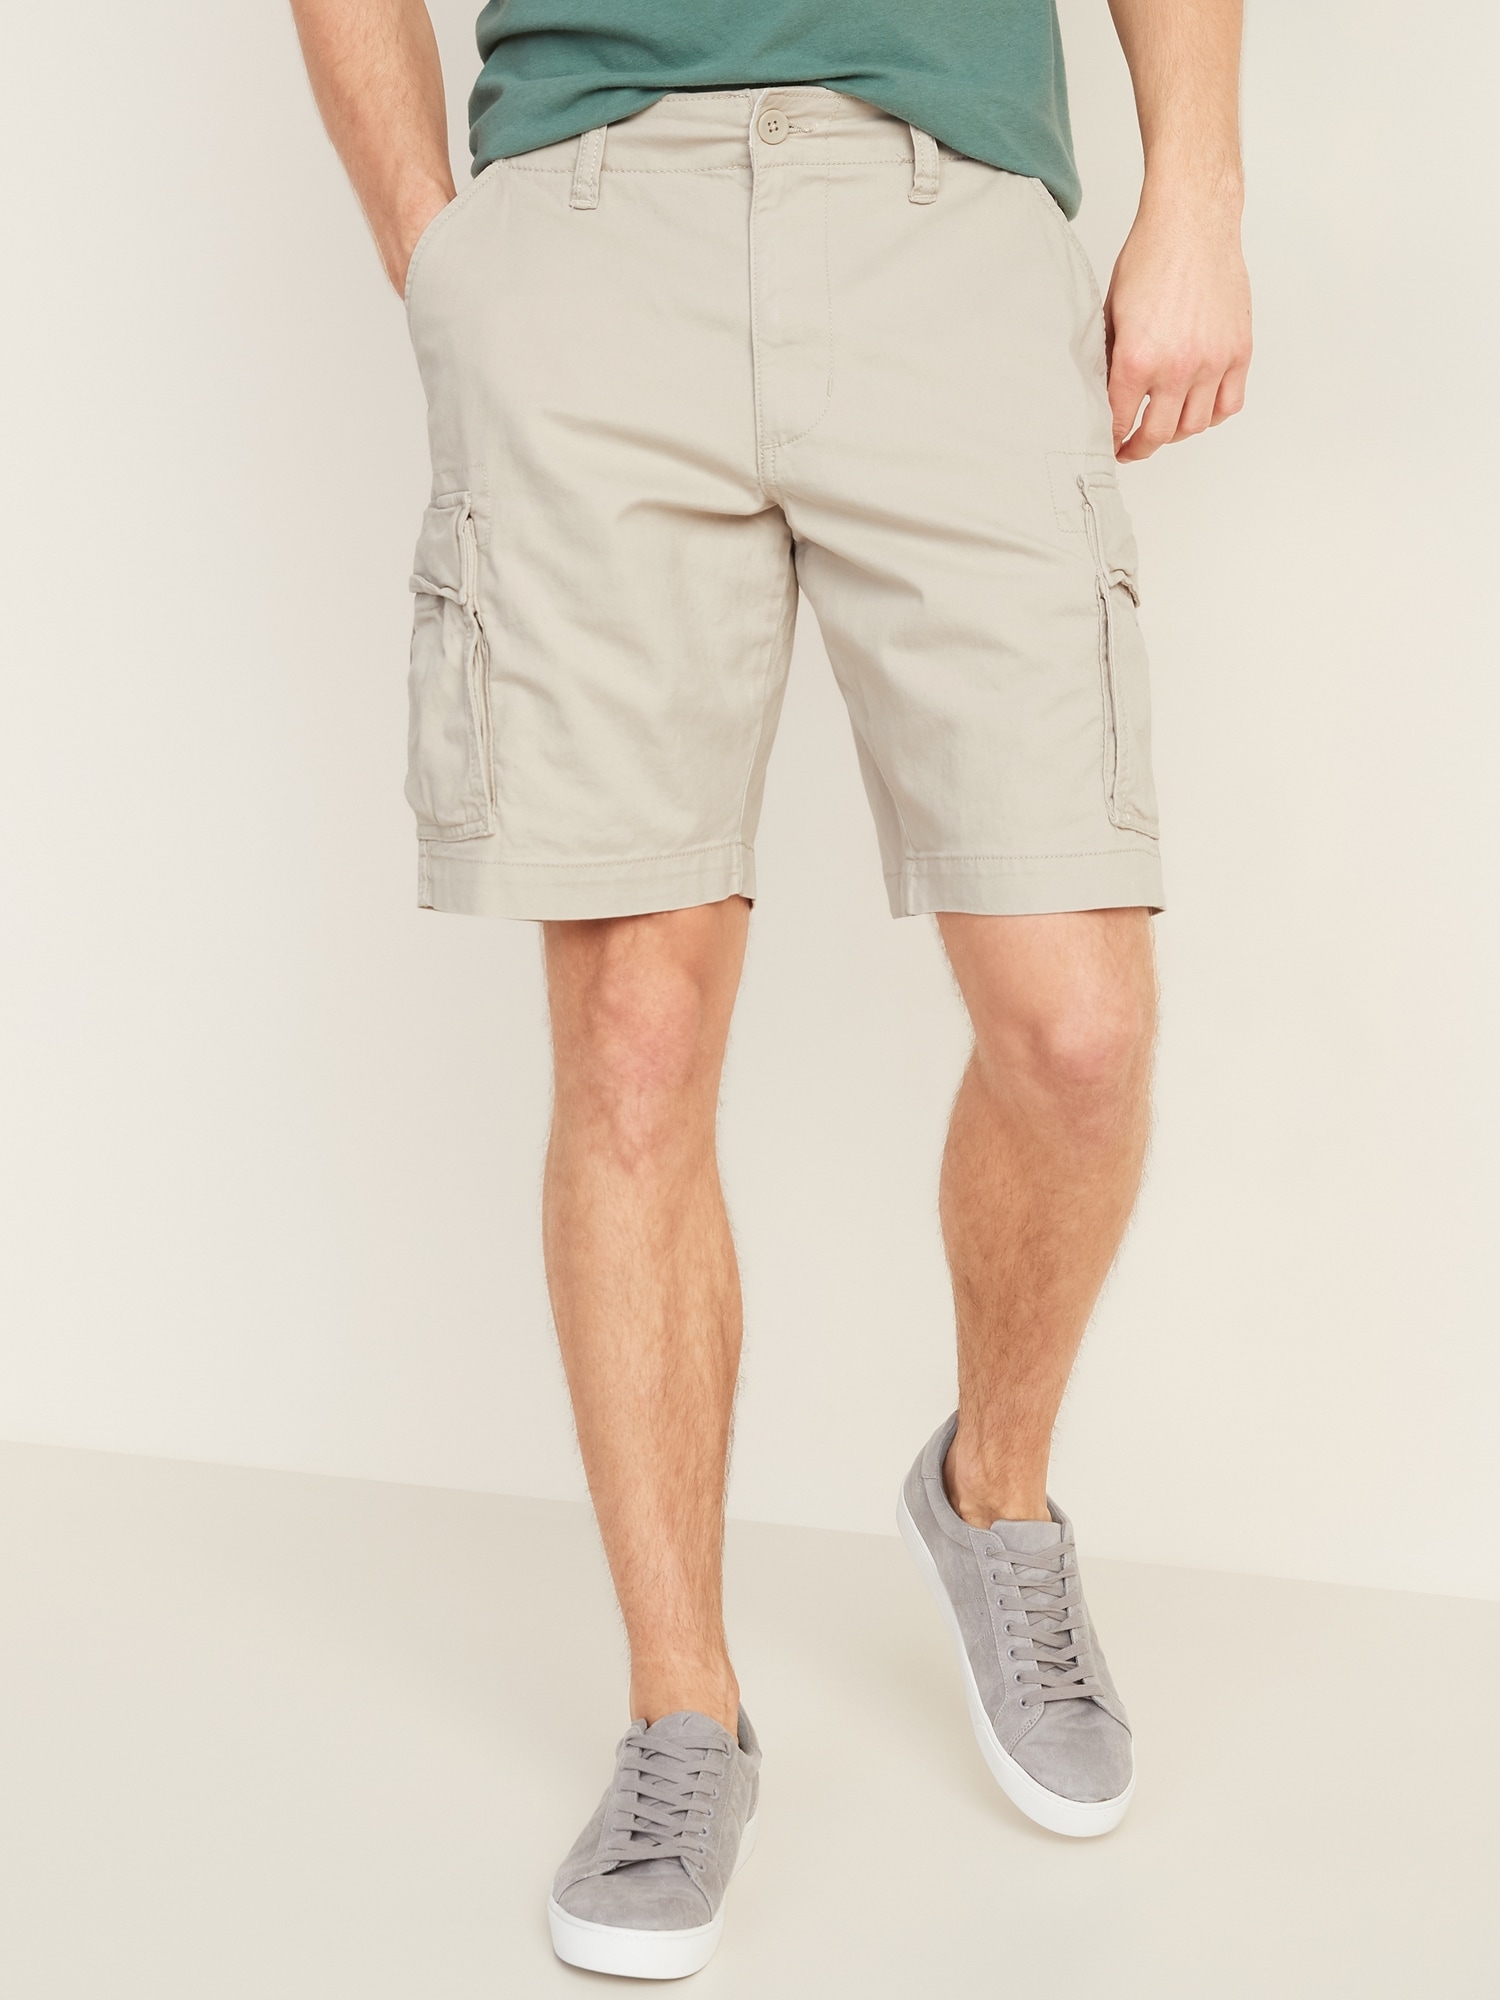 navy mens shorts